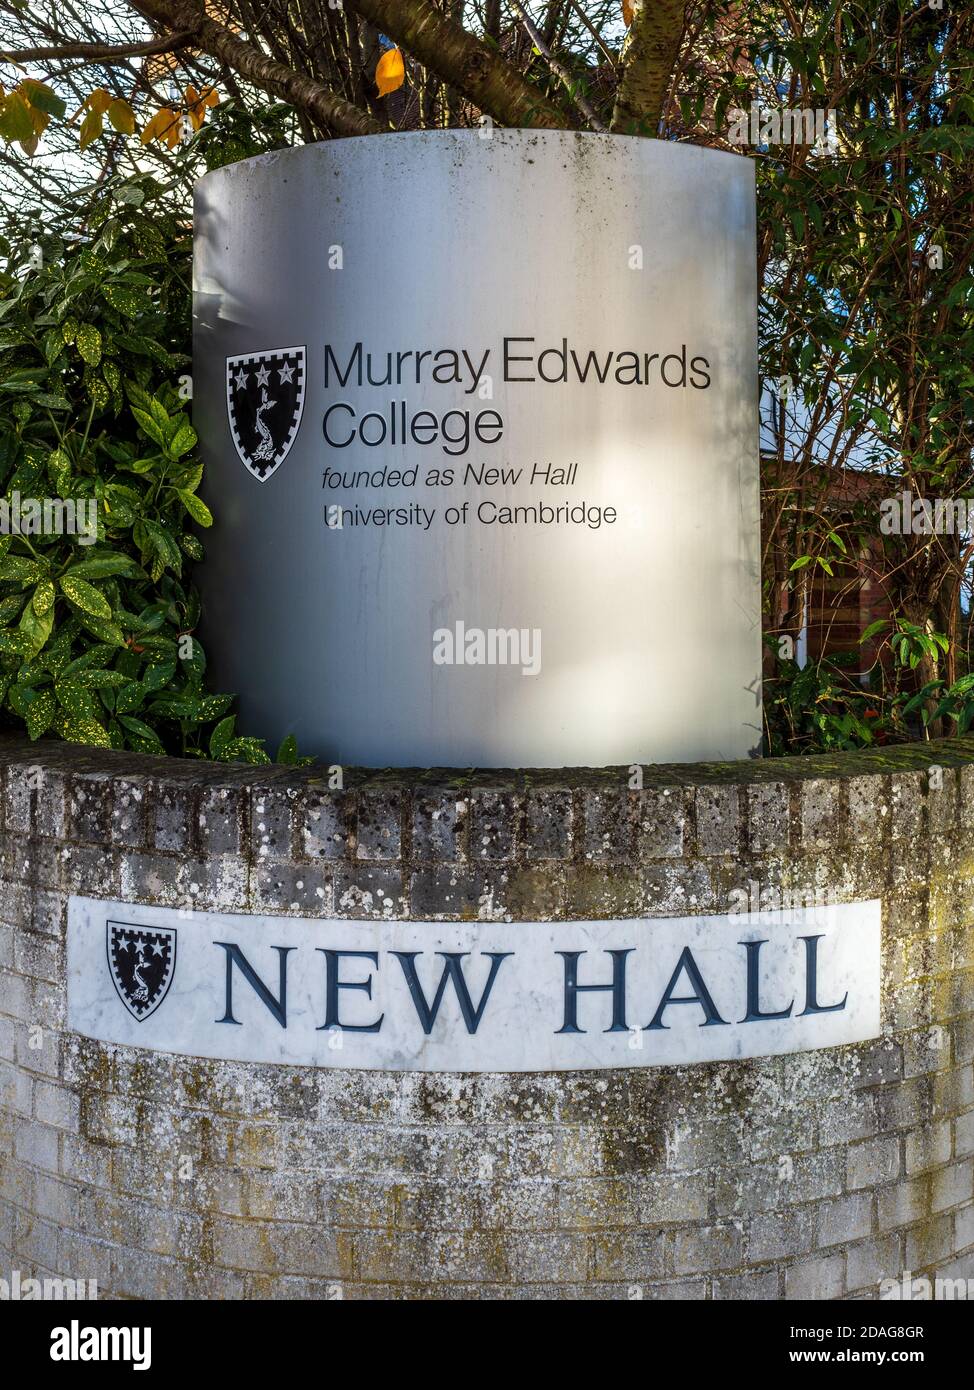 Murray Edwards College Cambridge - panneau à l'entrée du Murray Edwards College Cambridge University - fondé comme New Hall en 1954, collège réservé aux femmes. Banque D'Images